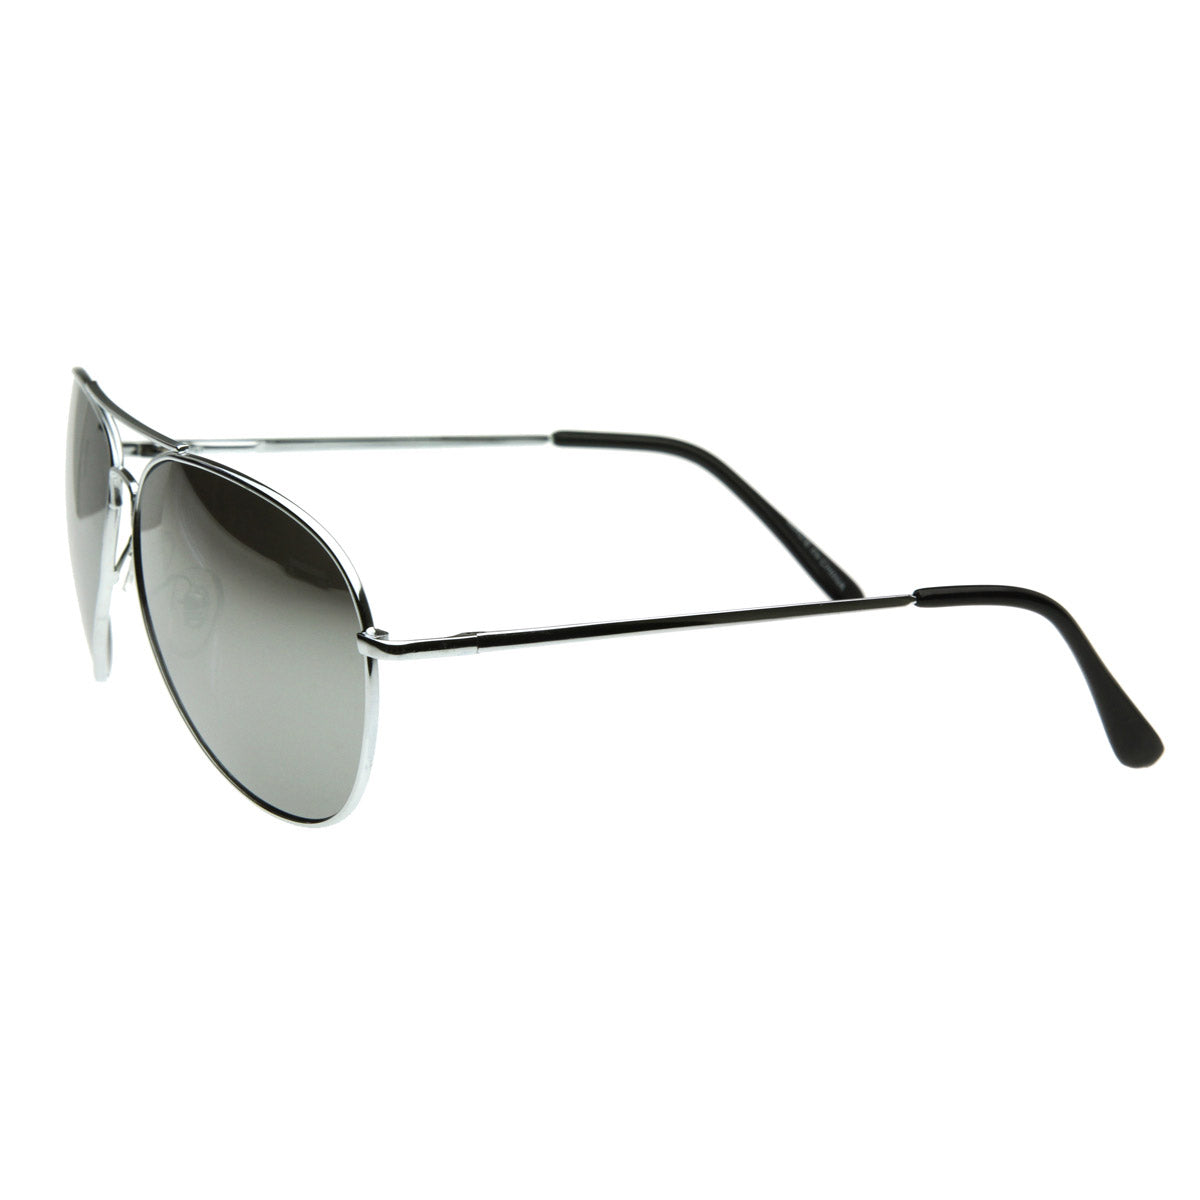 FULL MIRROR Mirrored Metal Aviator Sunglasses